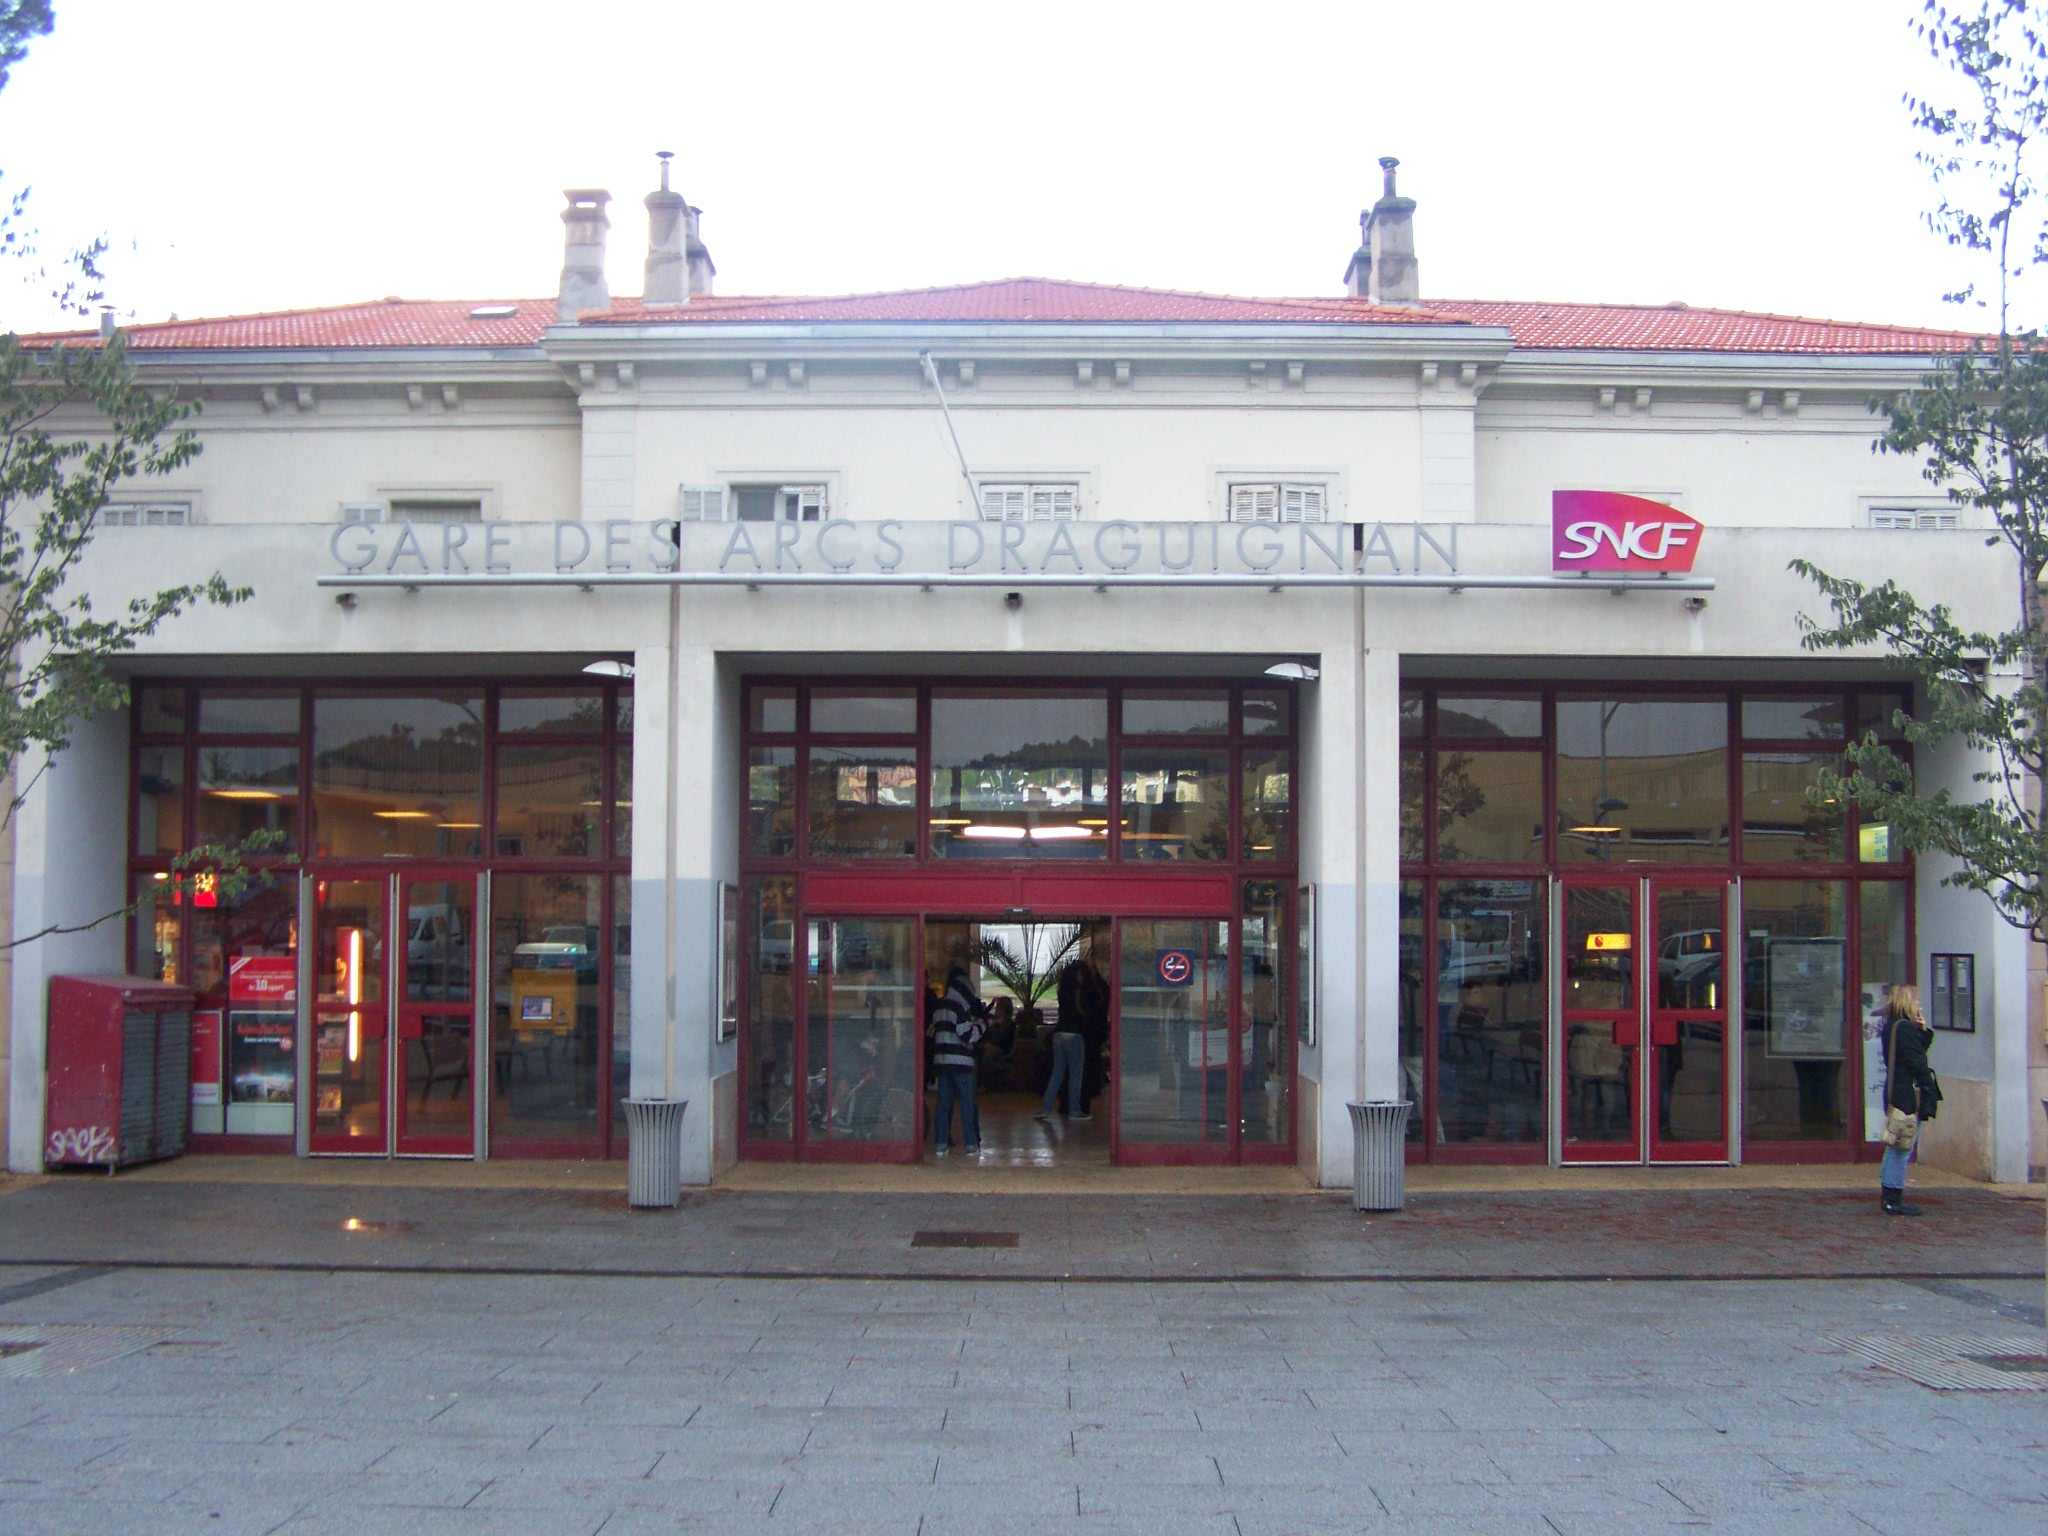 Gare des Arcs-Draguignan